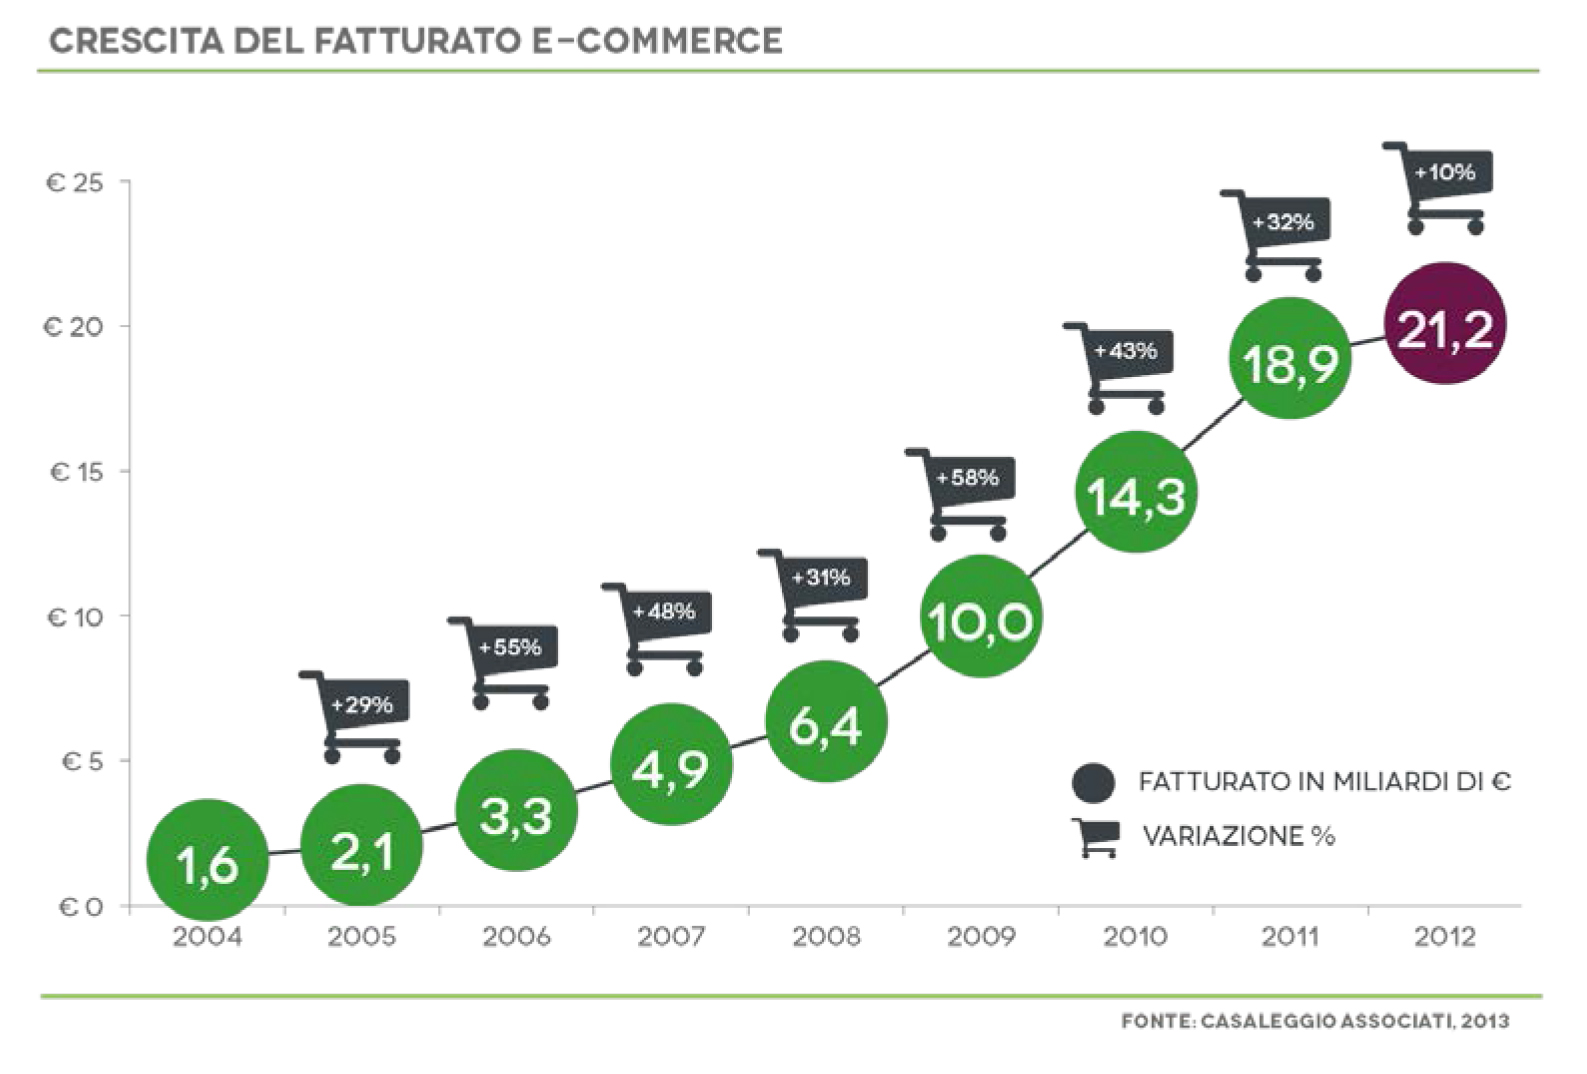 Crescita dell'e-commerce in Italia, dati Casaleggio Associati